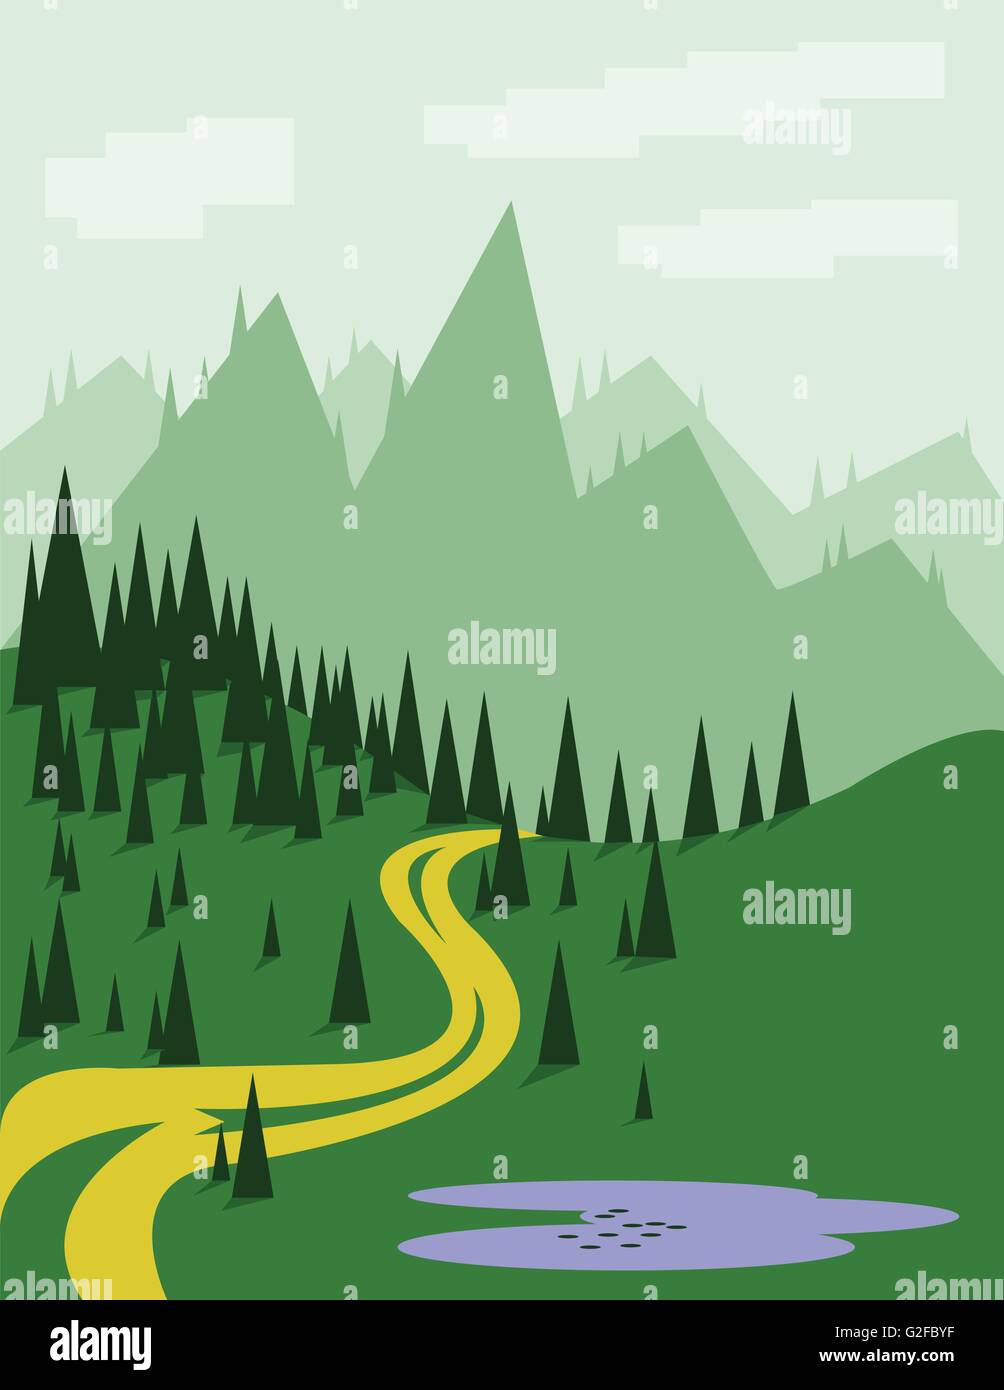 Paesaggio Astratto con alberi di pino, un giallo strada curva, viola il lago, il verde delle colline e montagne, su uno sfondo verde chiaro Illustrazione Vettoriale